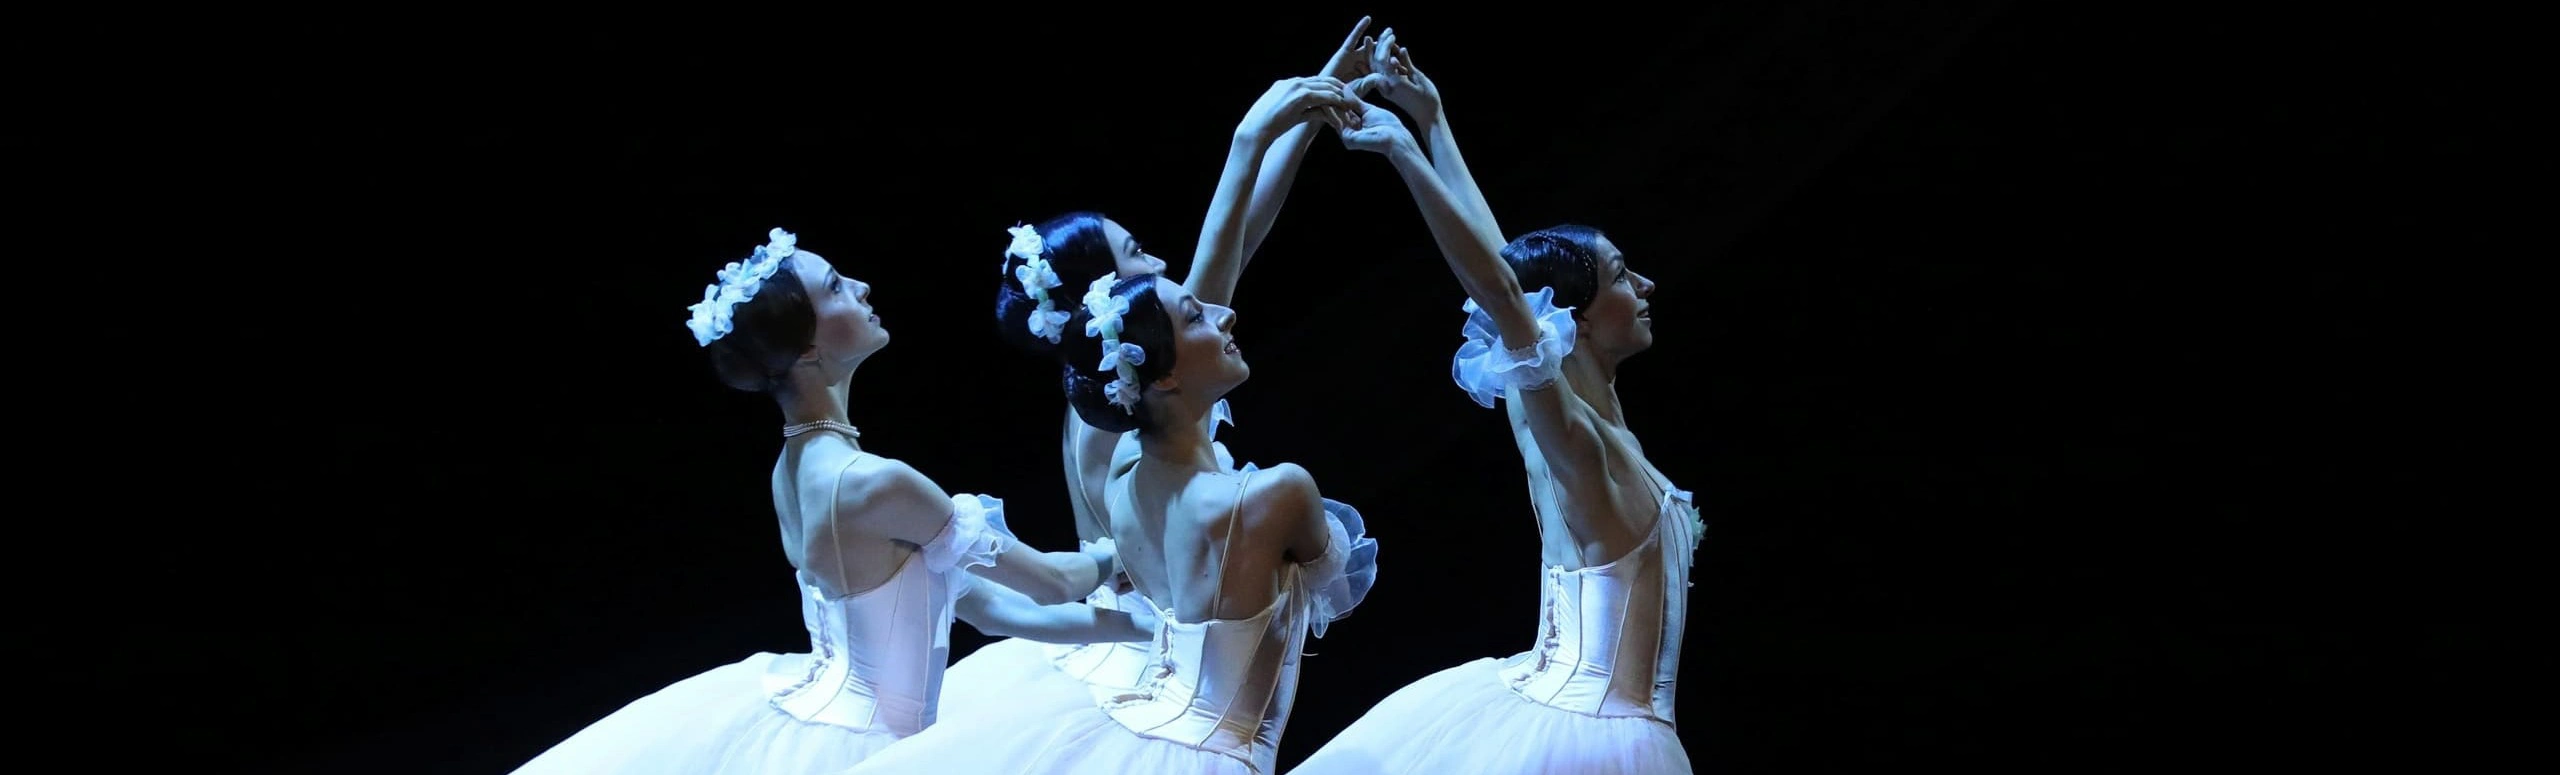 Восстановленные балеты Леонида Якобсона возвращаются на сцену, принося с собой эстетику, эмоции и великолепие.